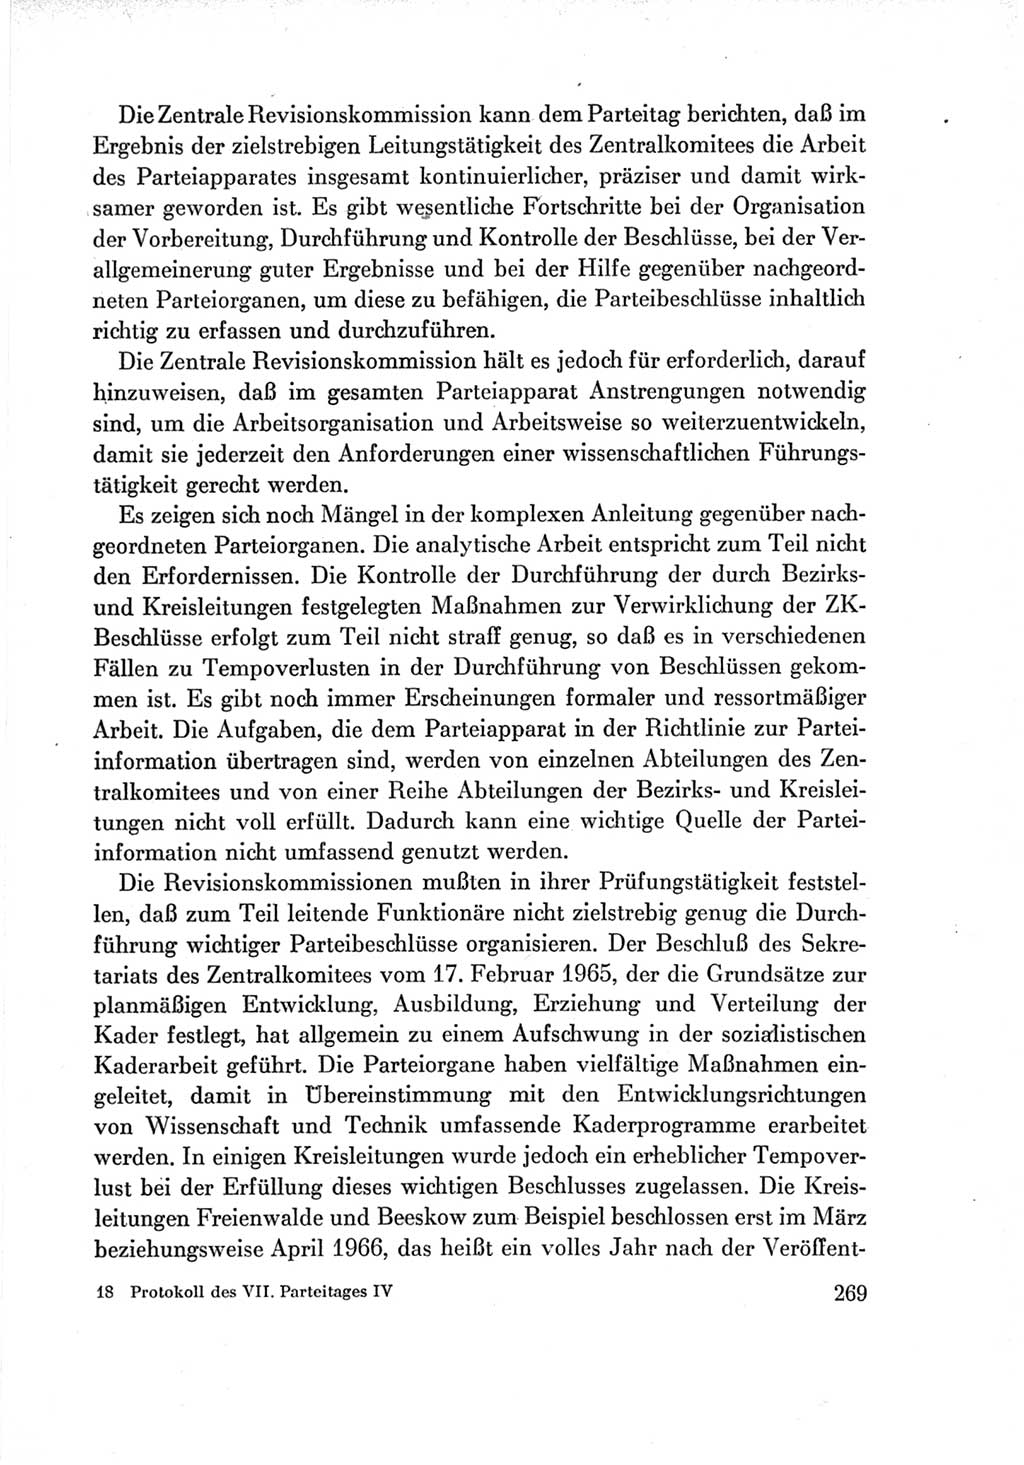 Protokoll der Verhandlungen des Ⅶ. Parteitages der Sozialistischen Einheitspartei Deutschlands (SED) [Deutsche Demokratische Republik (DDR)] 1967, Band Ⅳ, Seite 269 (Prot. Verh. Ⅶ. PT SED DDR 1967, Bd. Ⅳ, S. 269)